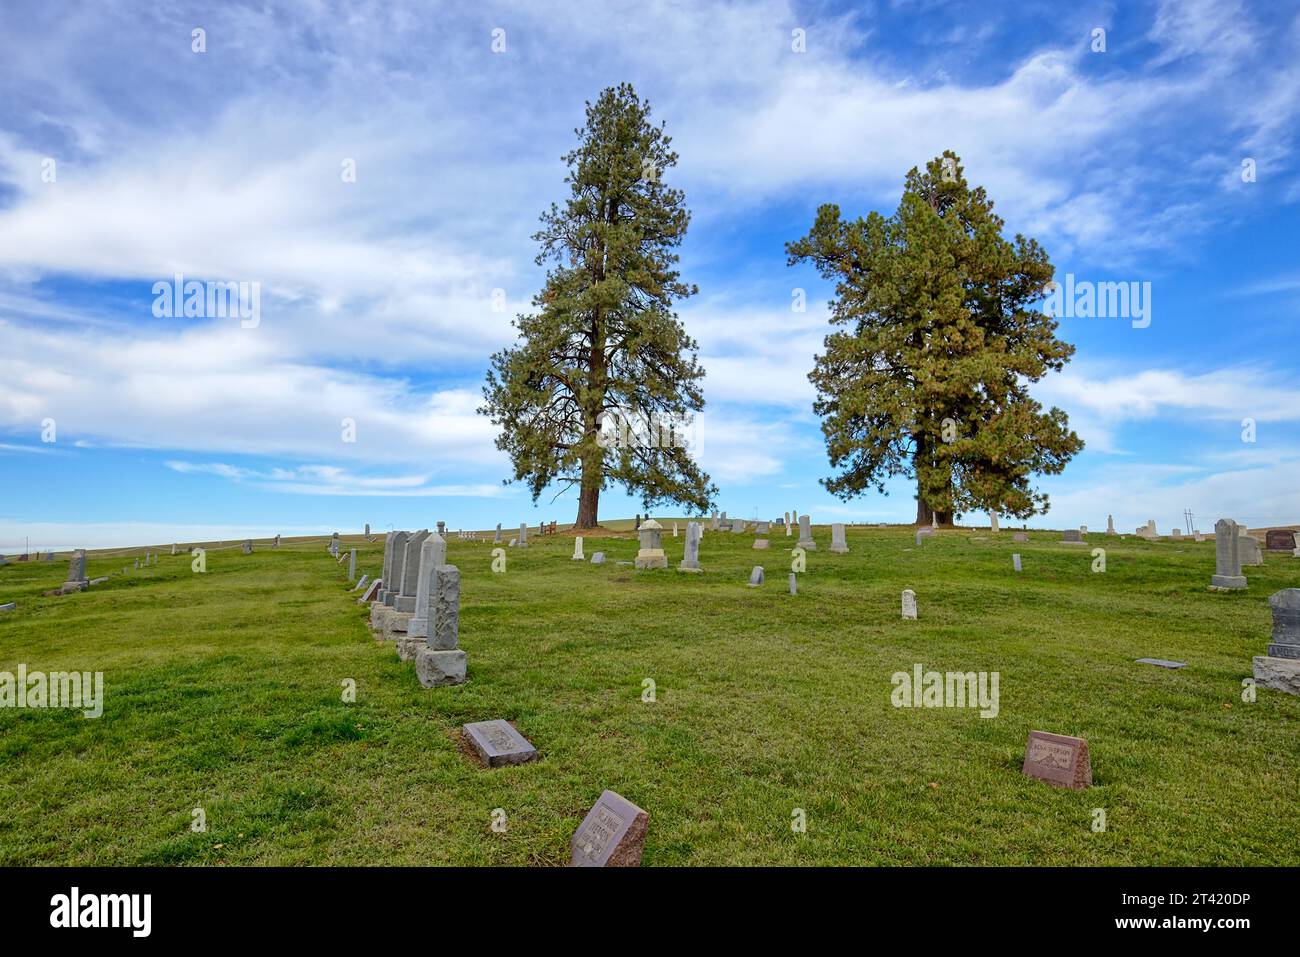 Deux grands pins se dressent comme sentinelles au-dessus du cimetière près de Moscou, Idaho. Banque D'Images